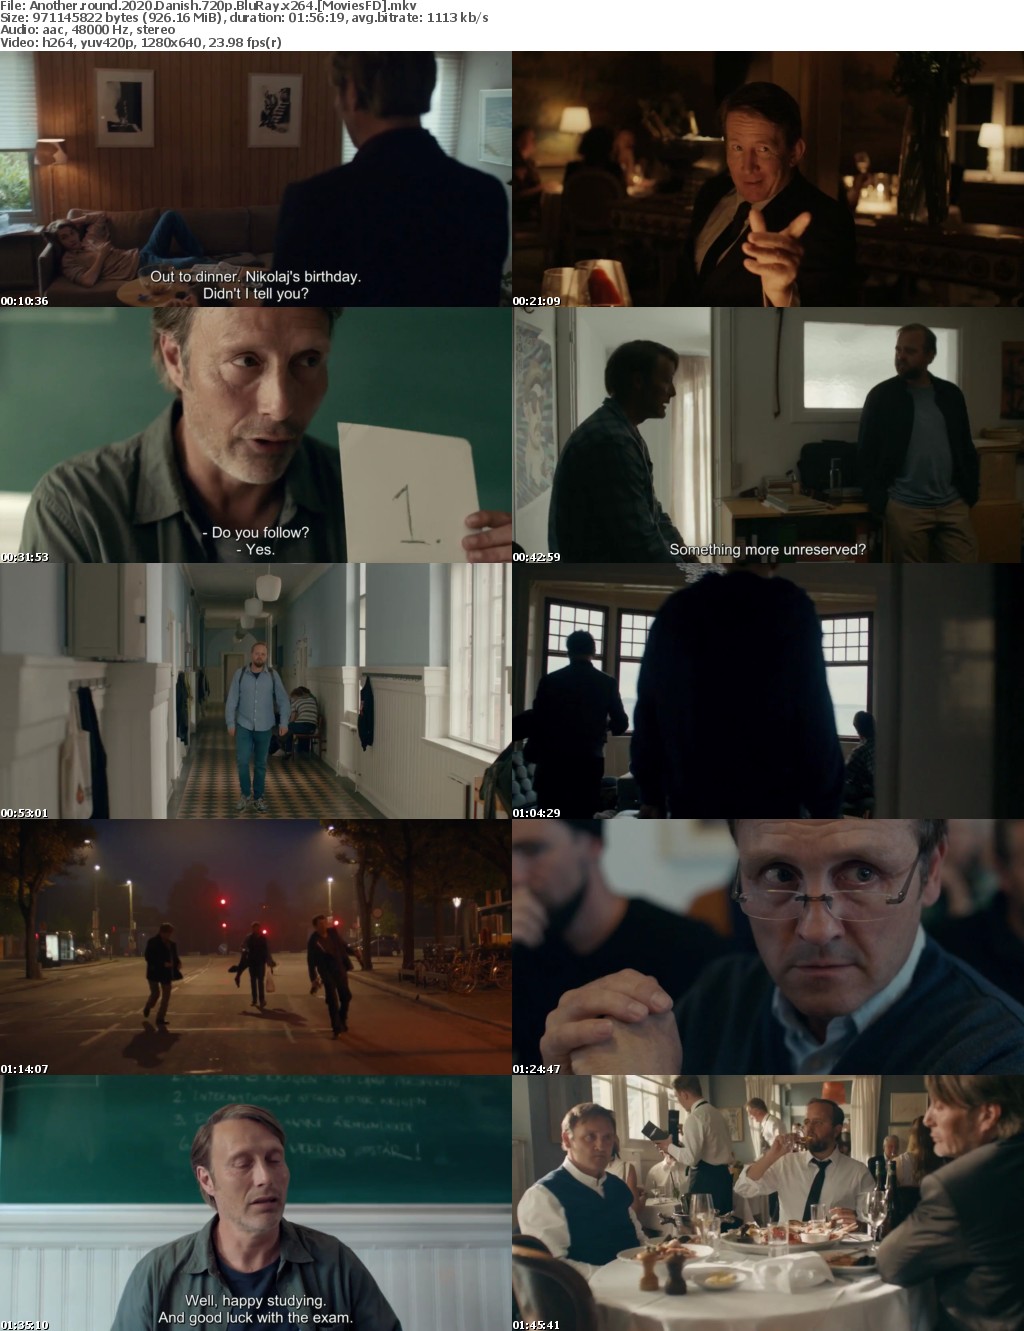 Another Round (2020) Danish 720p BluRay x264 - MoviesFD